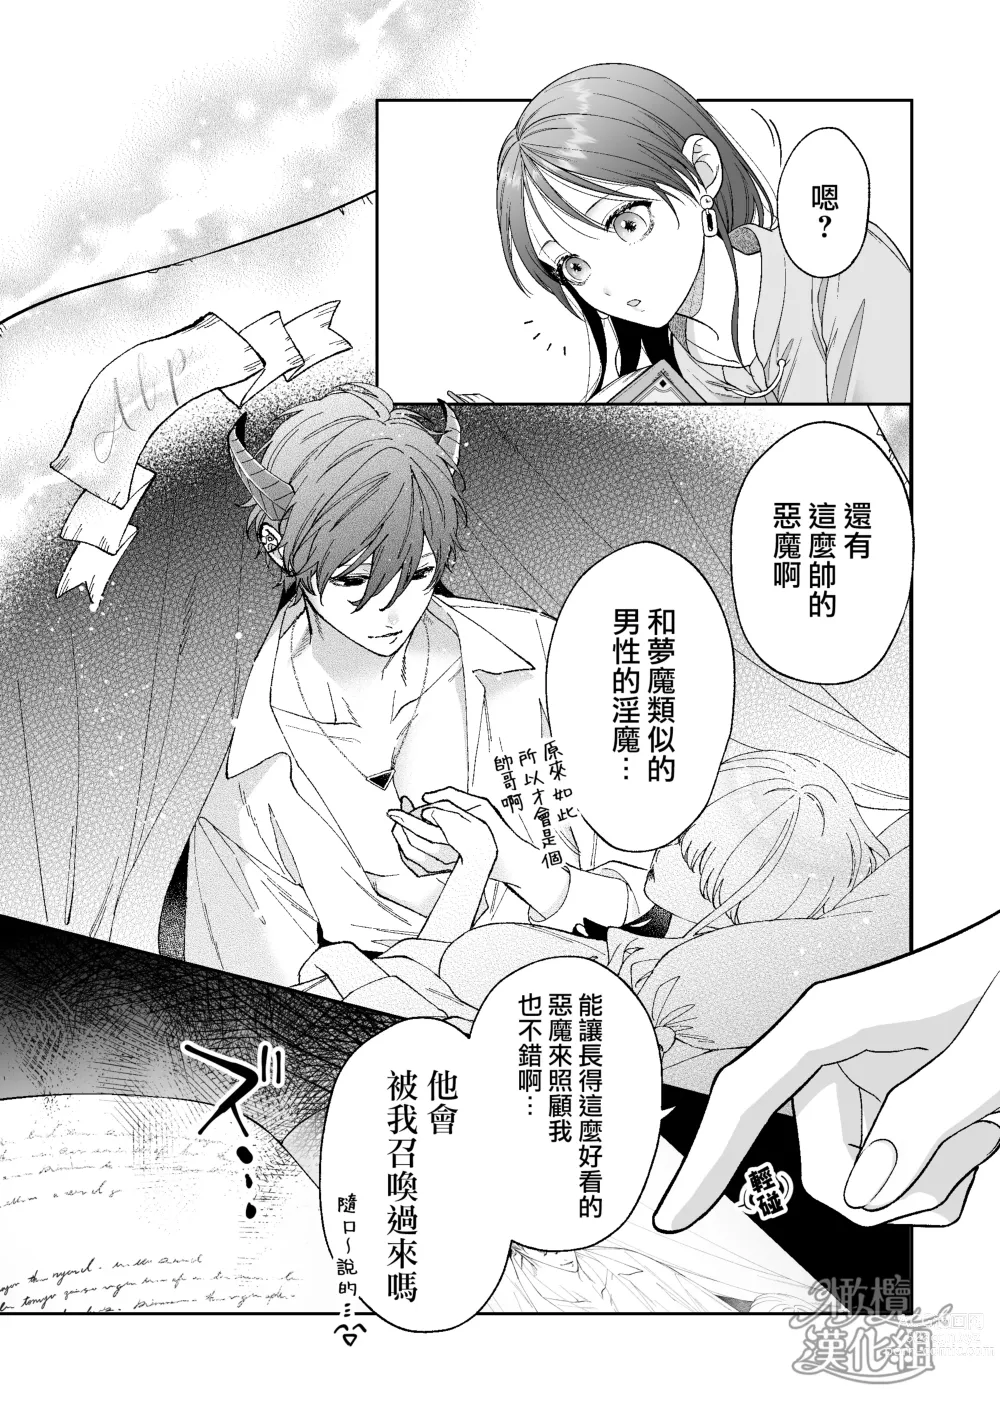 Page 5 of doujinshi 被一不小心召唤出来的爱照顾人的淫魔宠溺、然后被他溫柔的性爱攻陷了